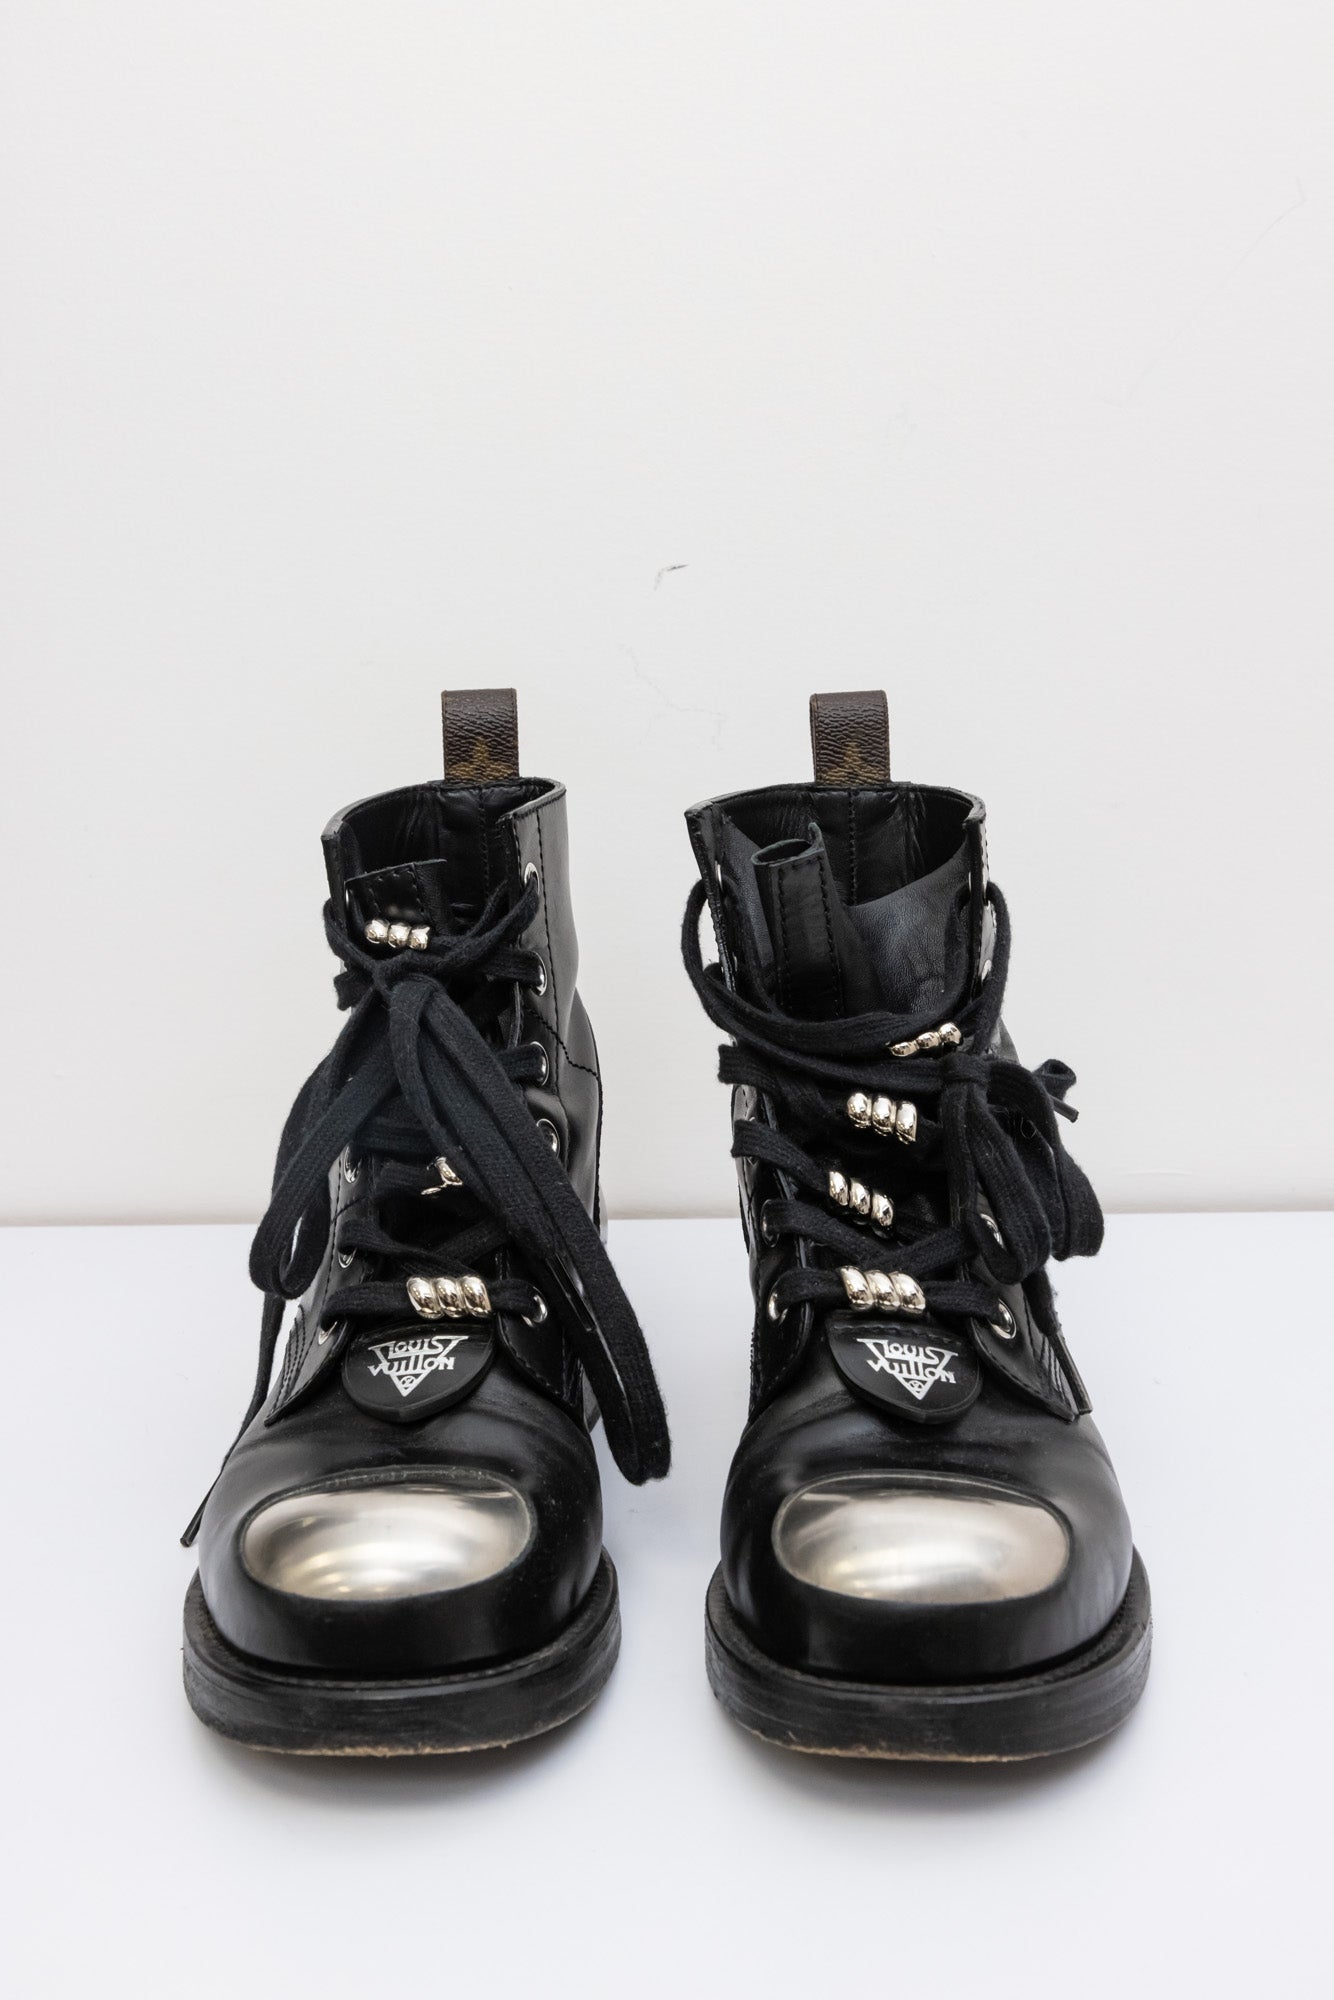 LOUIS VUITTON Metropolis Shoes Monogram Canvas | Black Leather Ankle Boots